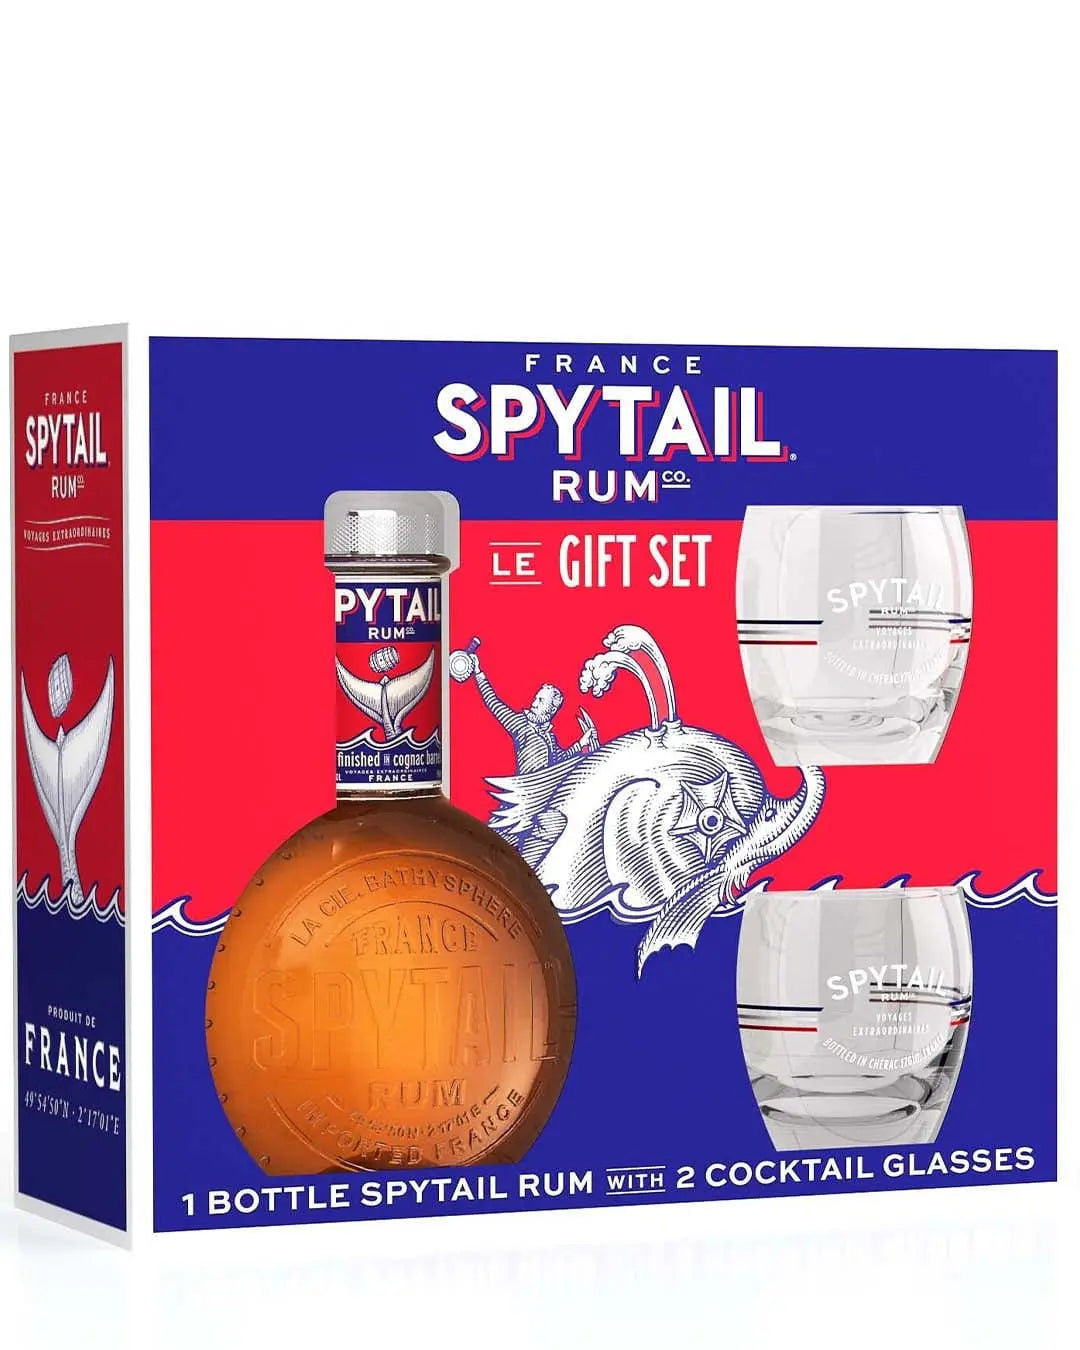 Spytail Cognac Cask Rum with 2 Glasses, 70 cl Rum